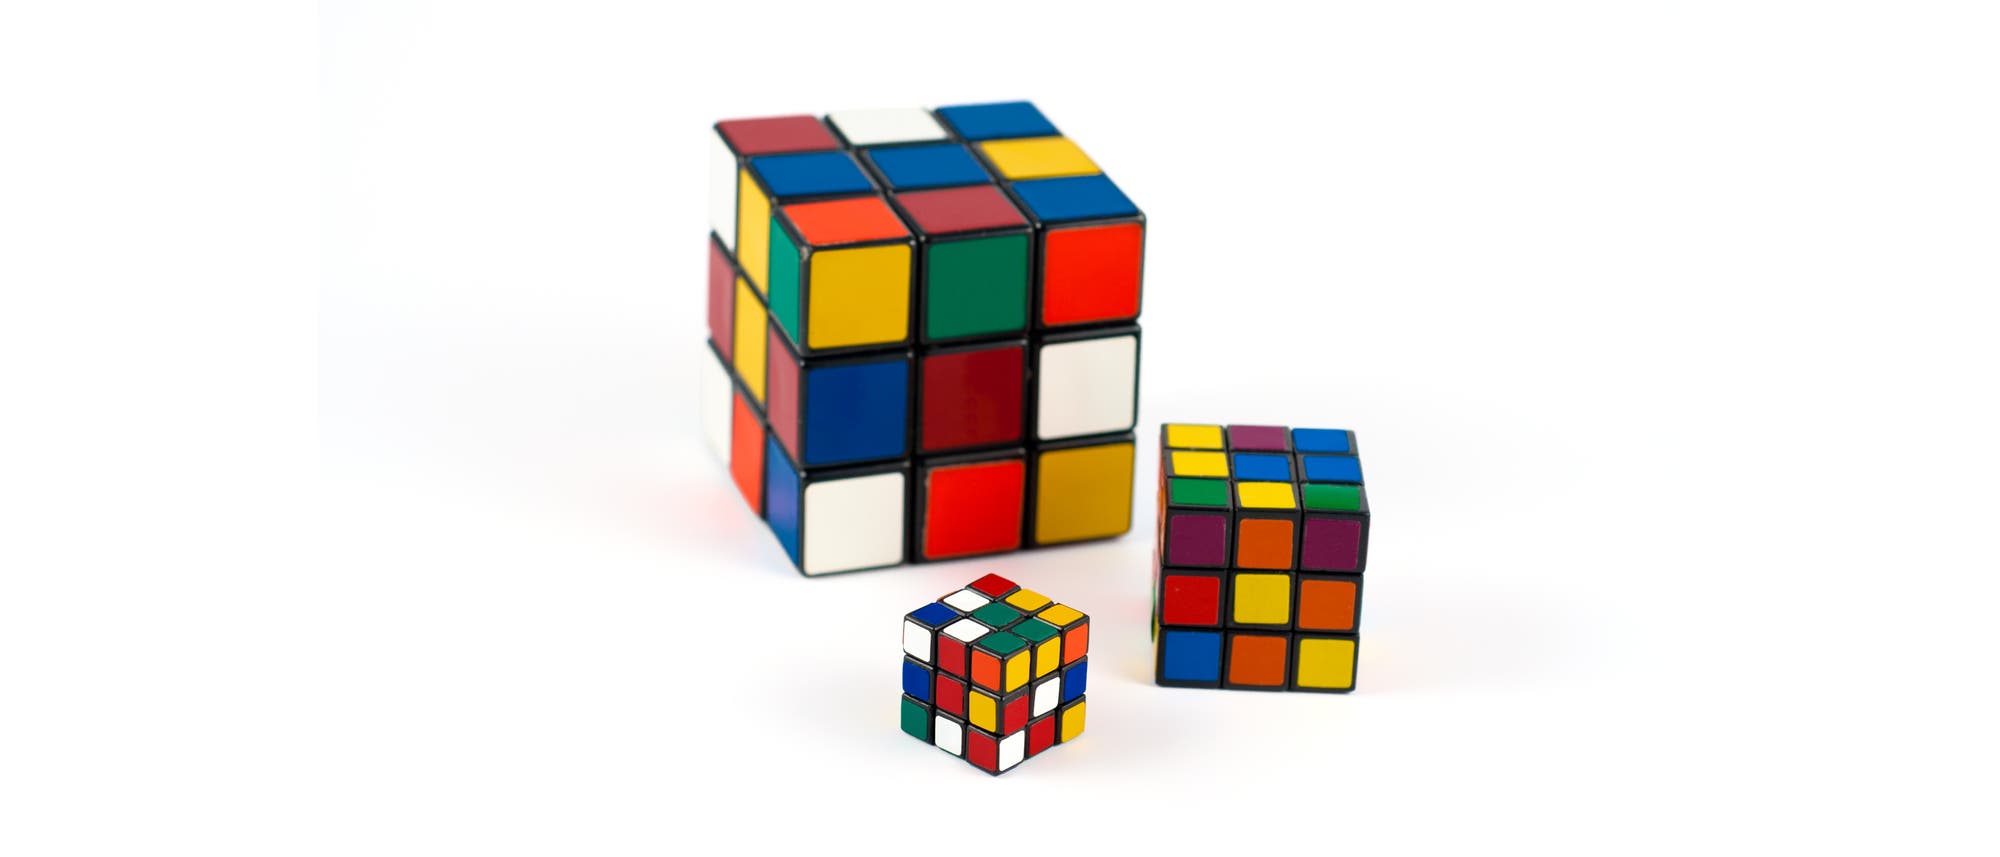 Drei Rubik-Würfel unterschiedlicher Größe auf weißem Grund.